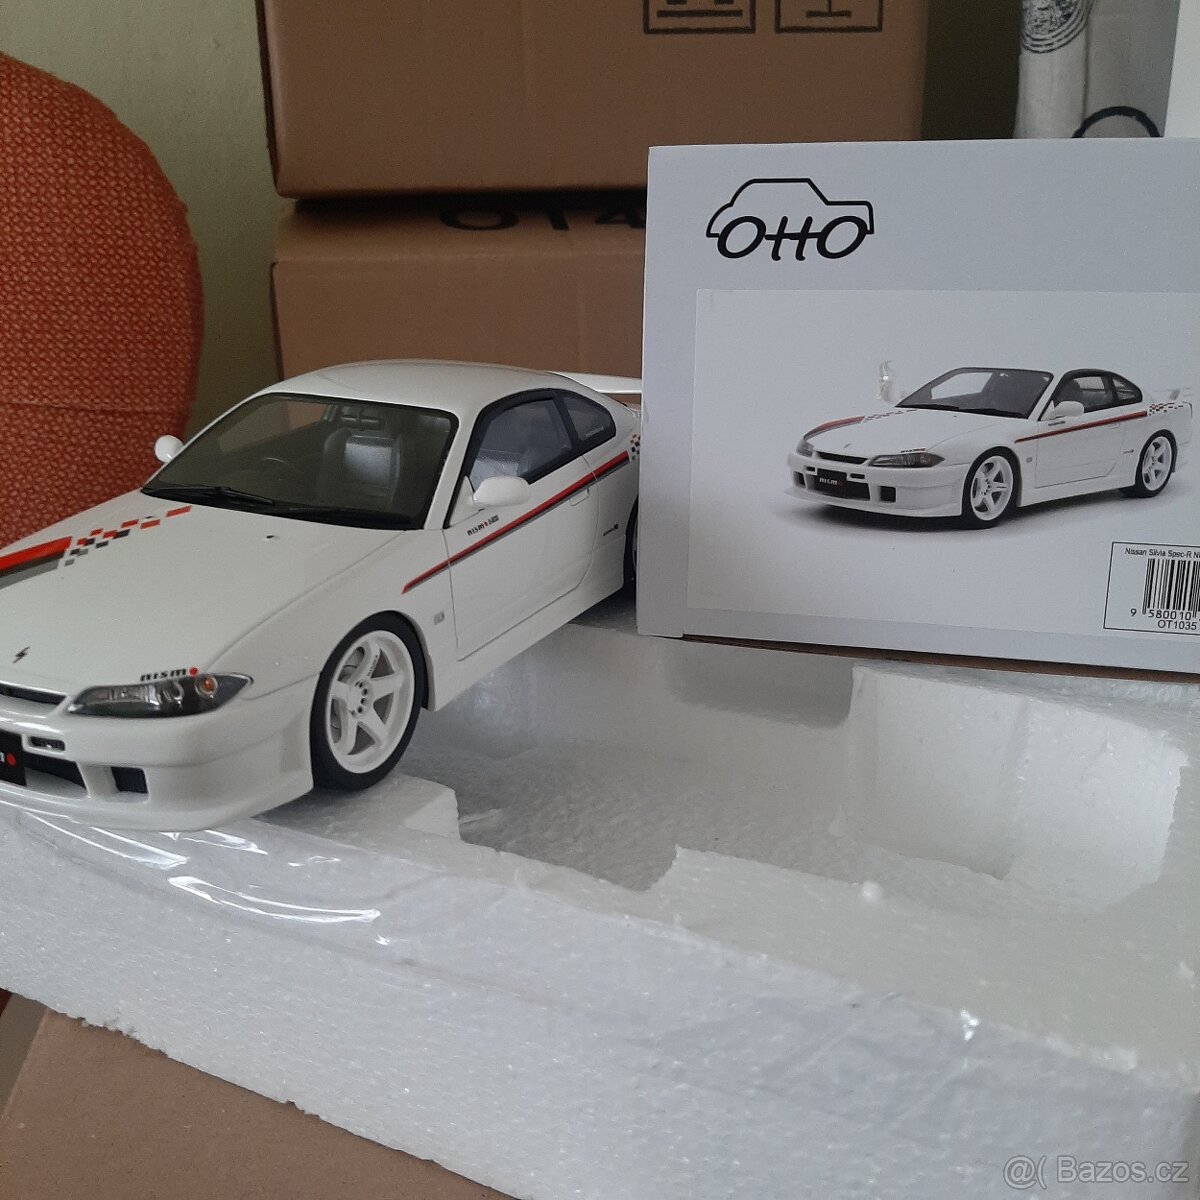 1:18 Nissan Silvia Otto model.